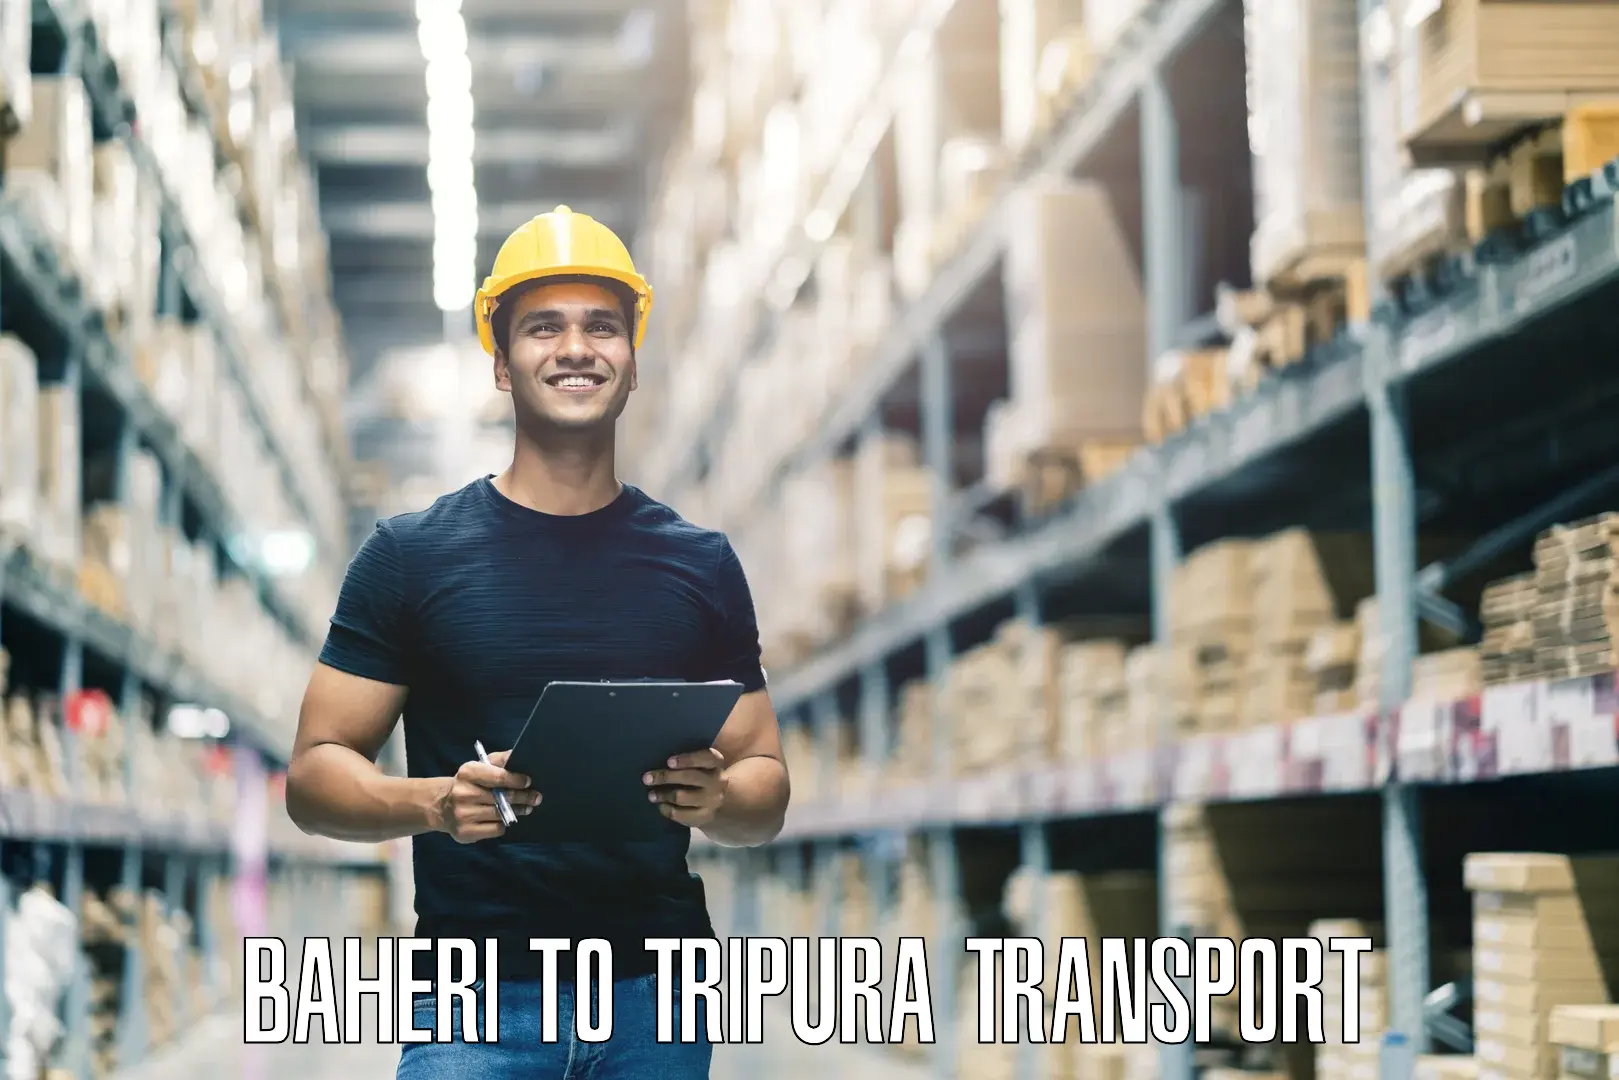 Road transport online services Baheri to Tripura